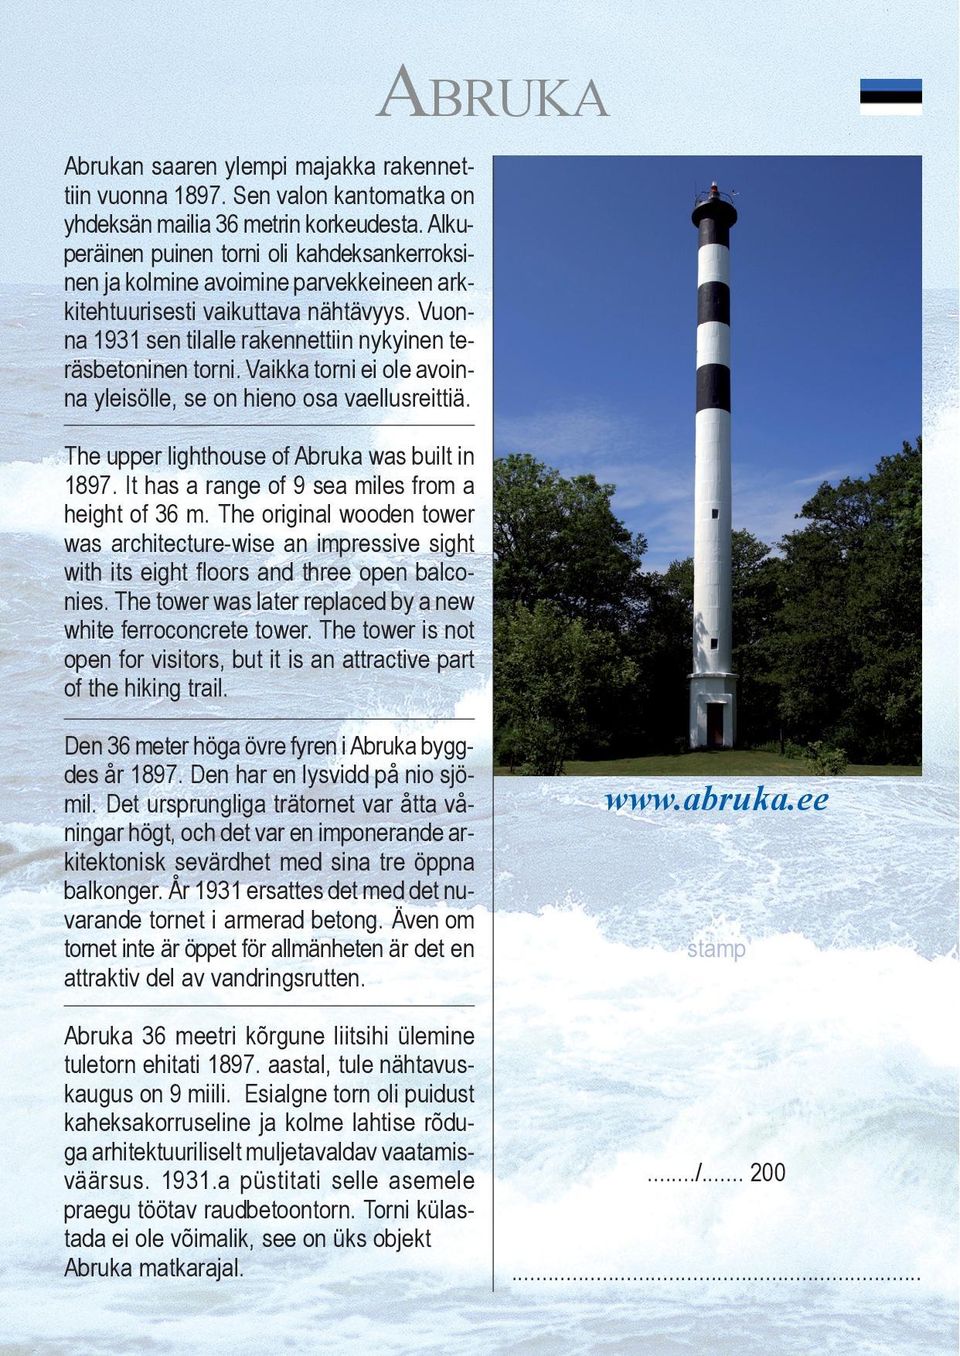 Vaikka torni ei ole avoinna yleisölle, se on hieno osa vaellusreittiä. The upper lighthouse of Abruka was built in 1897. It has a range of 9 sea miles from a height of 36 m.